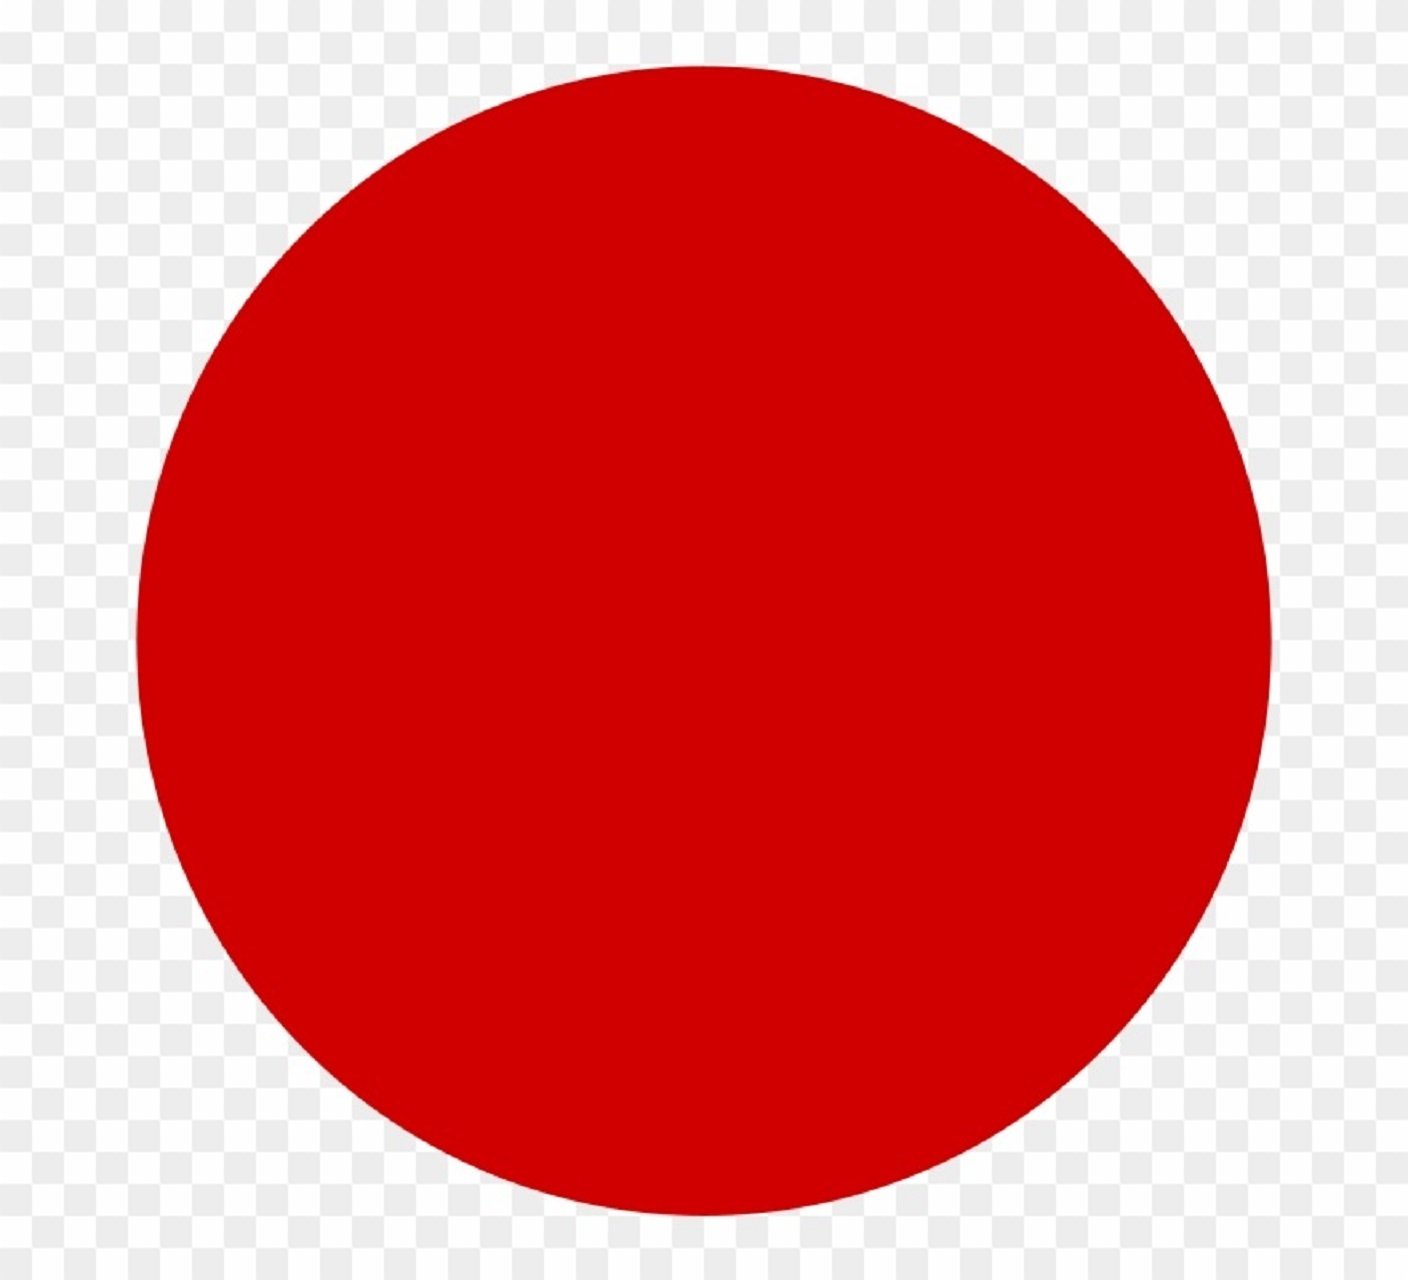 Круг без цензуры. Красный круг. Большой красный круг. Красный кружок. Красный кружок на прозрачном фоне.